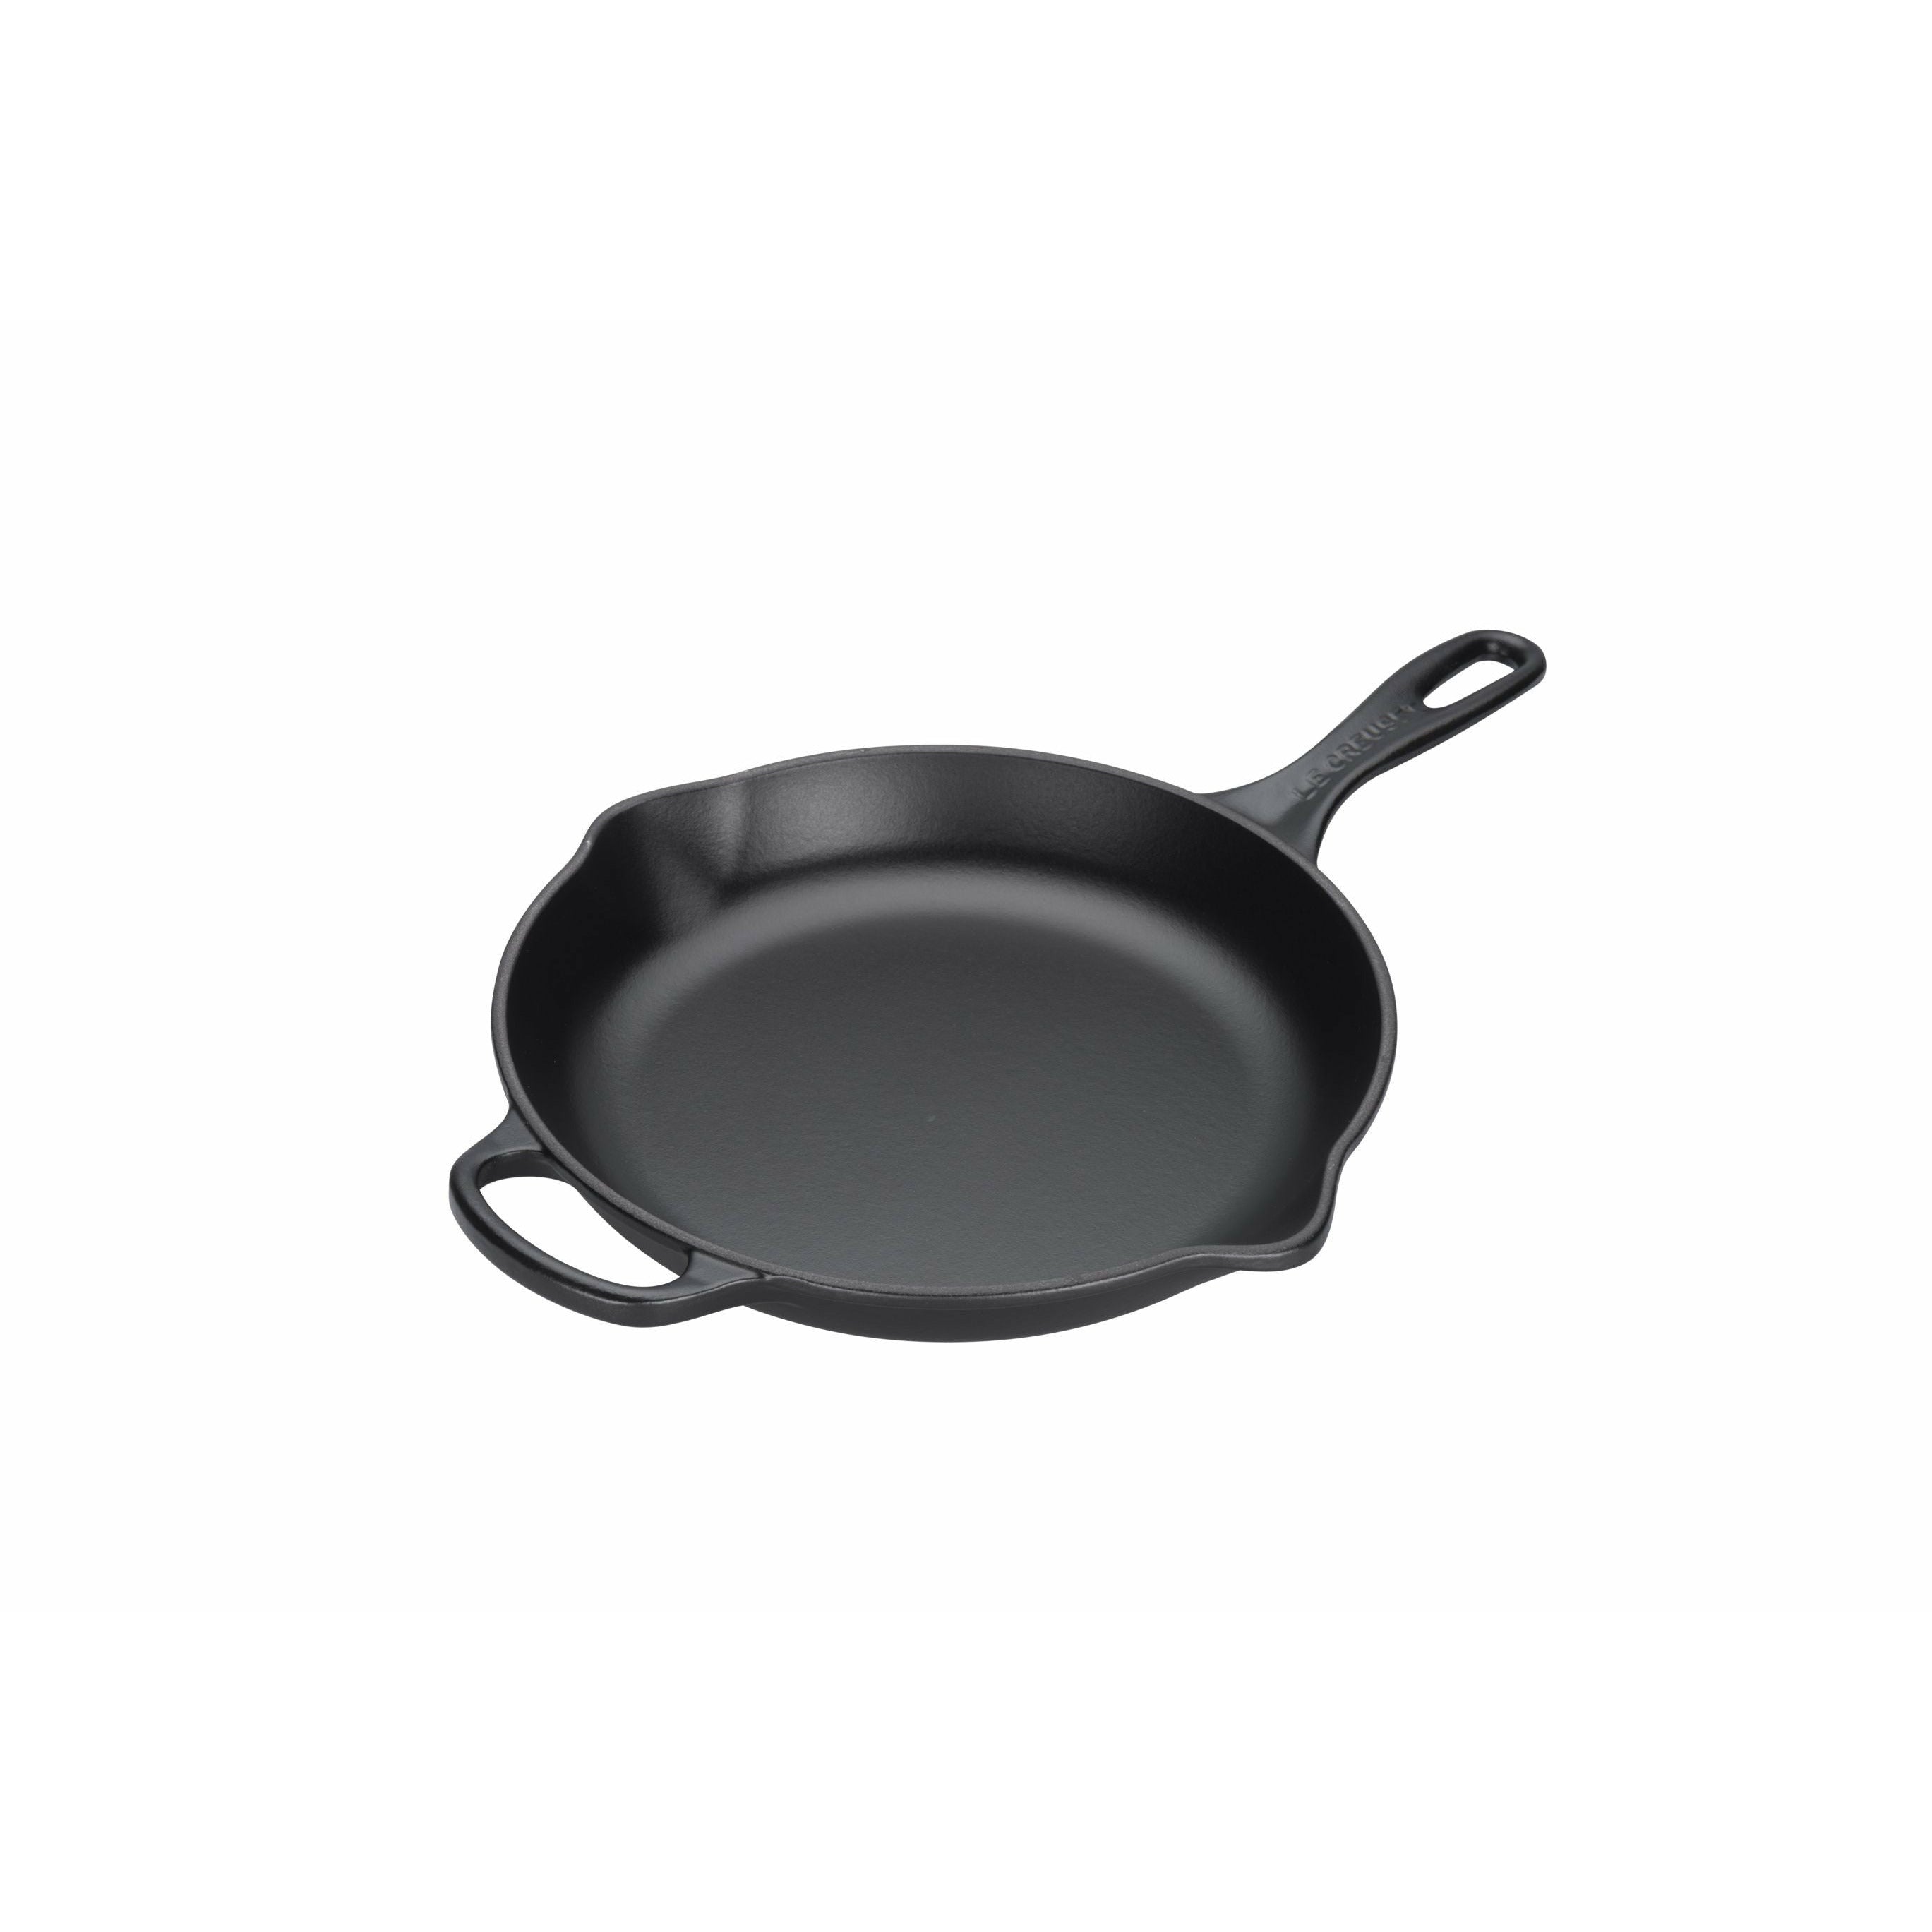 Le Creuset Signature Round Frying and Servant Pan 16 cm, noir